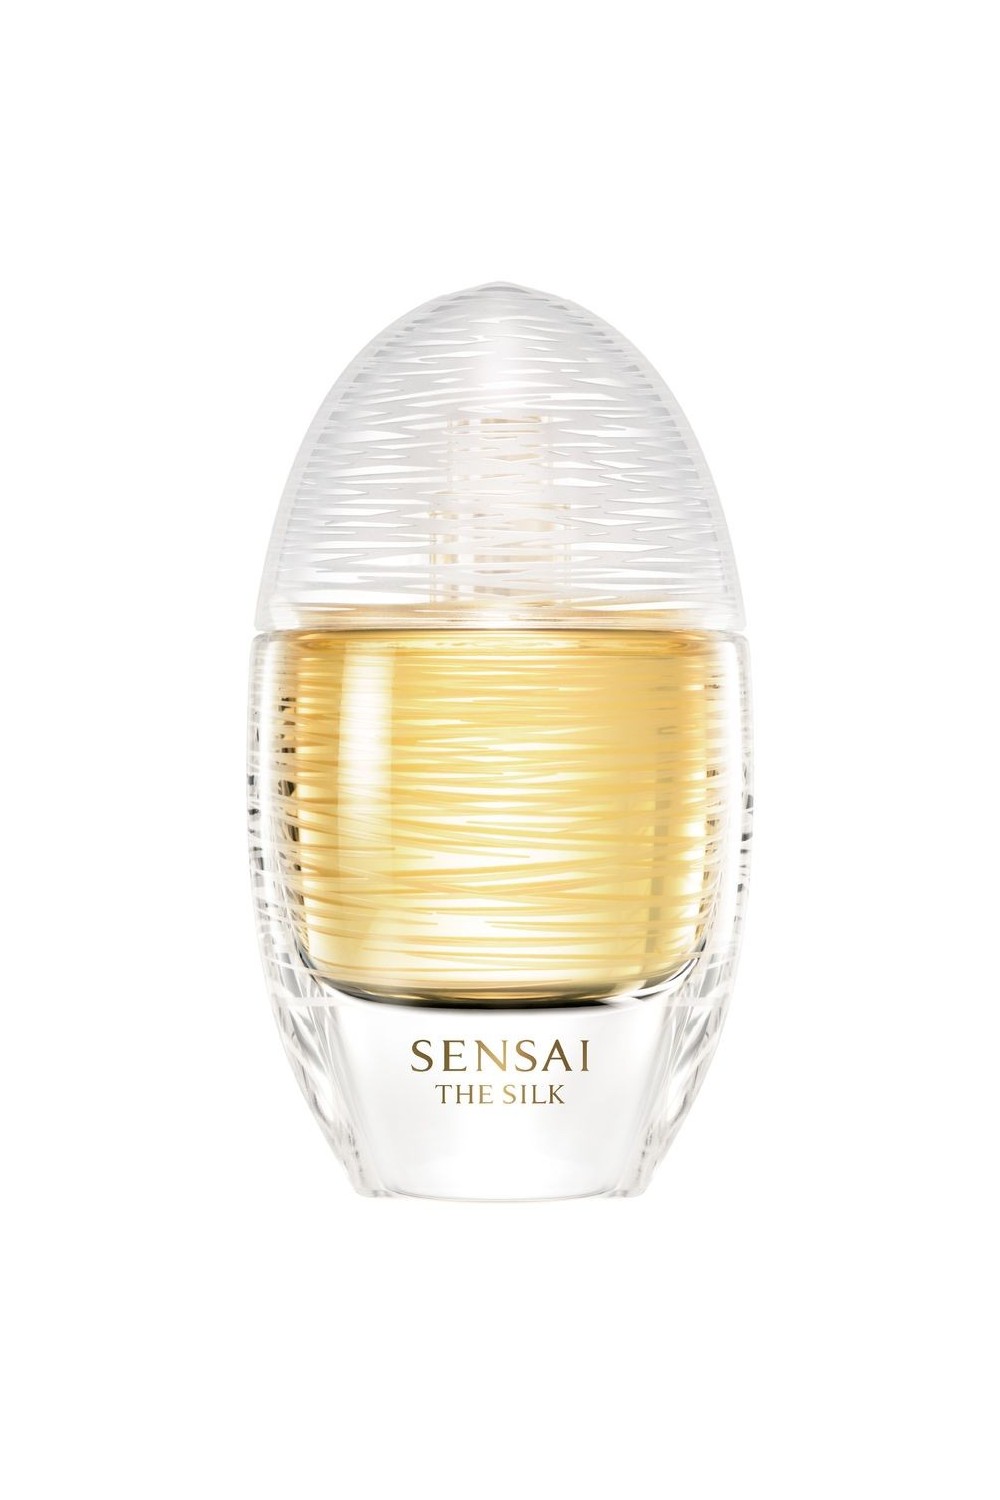 Sensai The Silk Eau De Perfume Spray 50ml